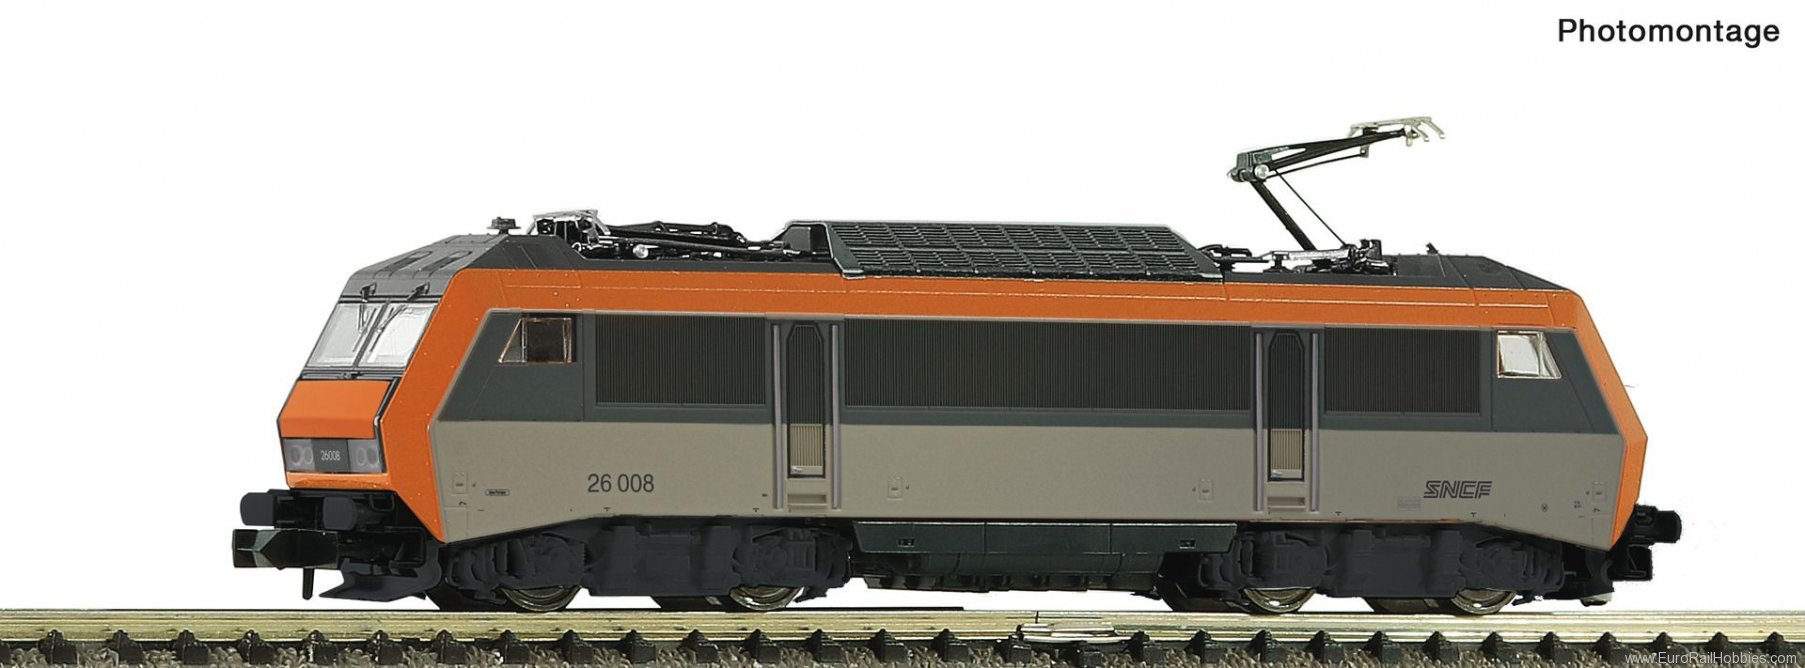 Fleischmann 732310 SNCF Electric locomotive BB 26008 DCC w/Sound